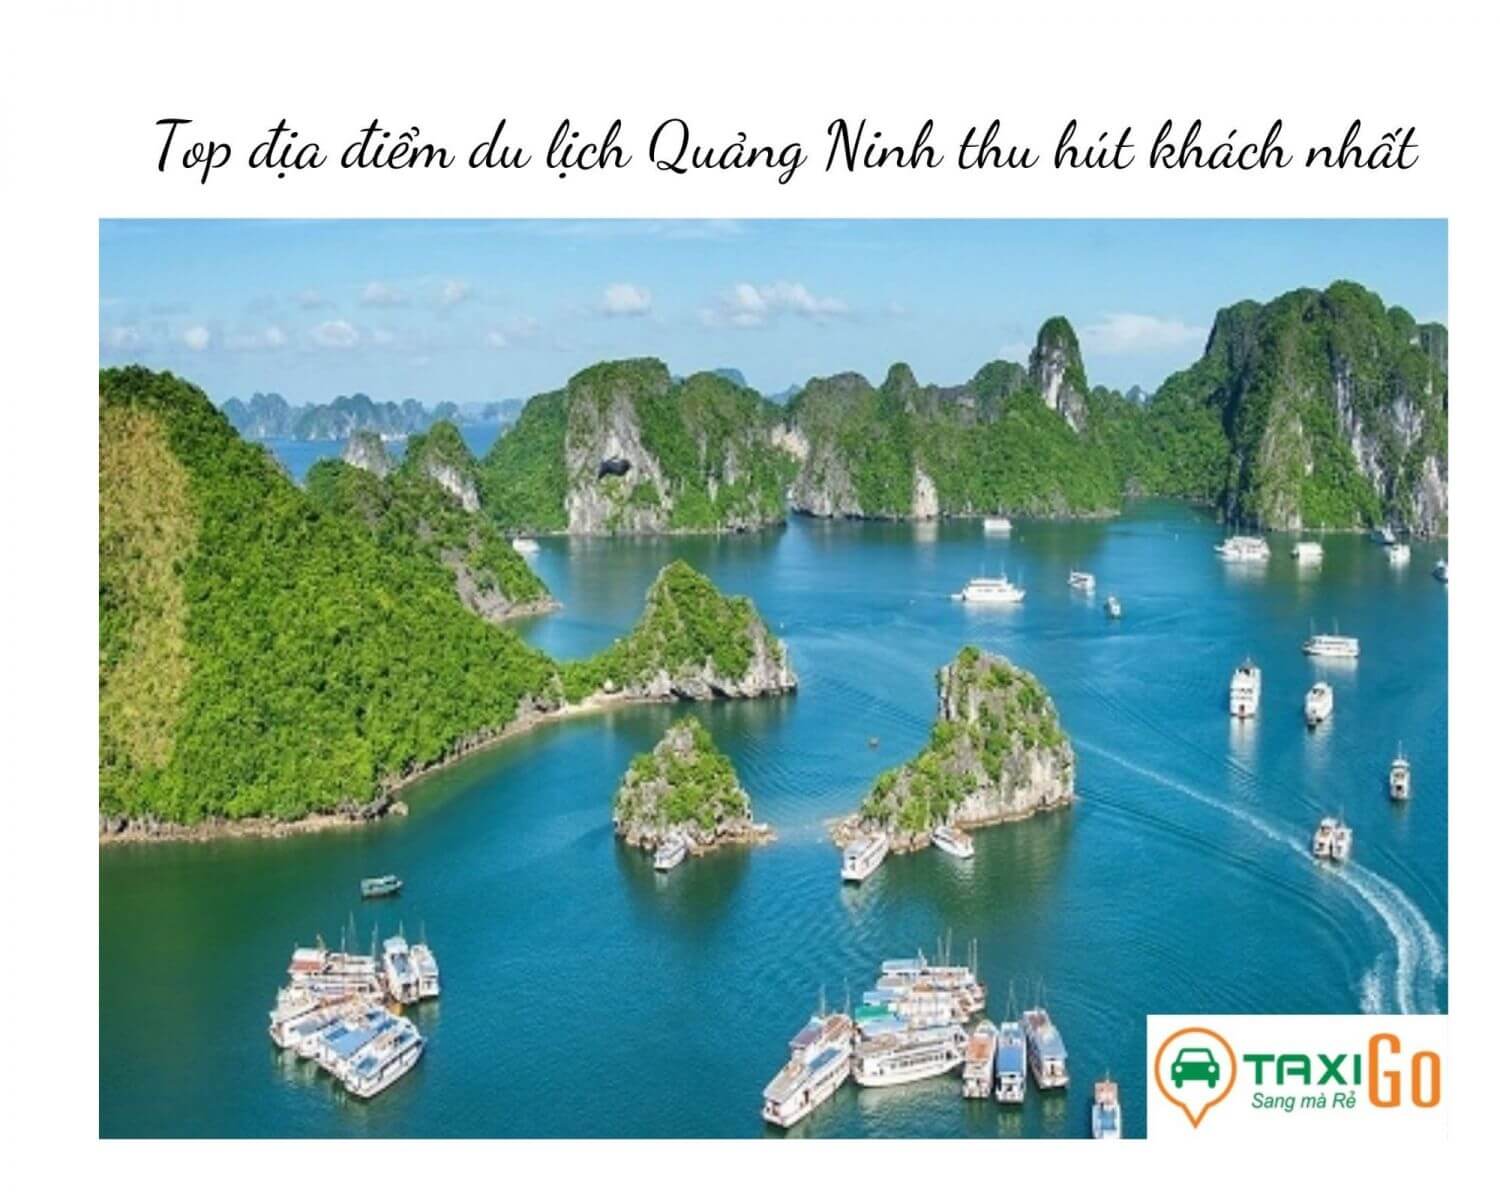 Những địa điểm không nên bỏ lỡ khi du lịch Quảng Ninh- TaxiGo.vn